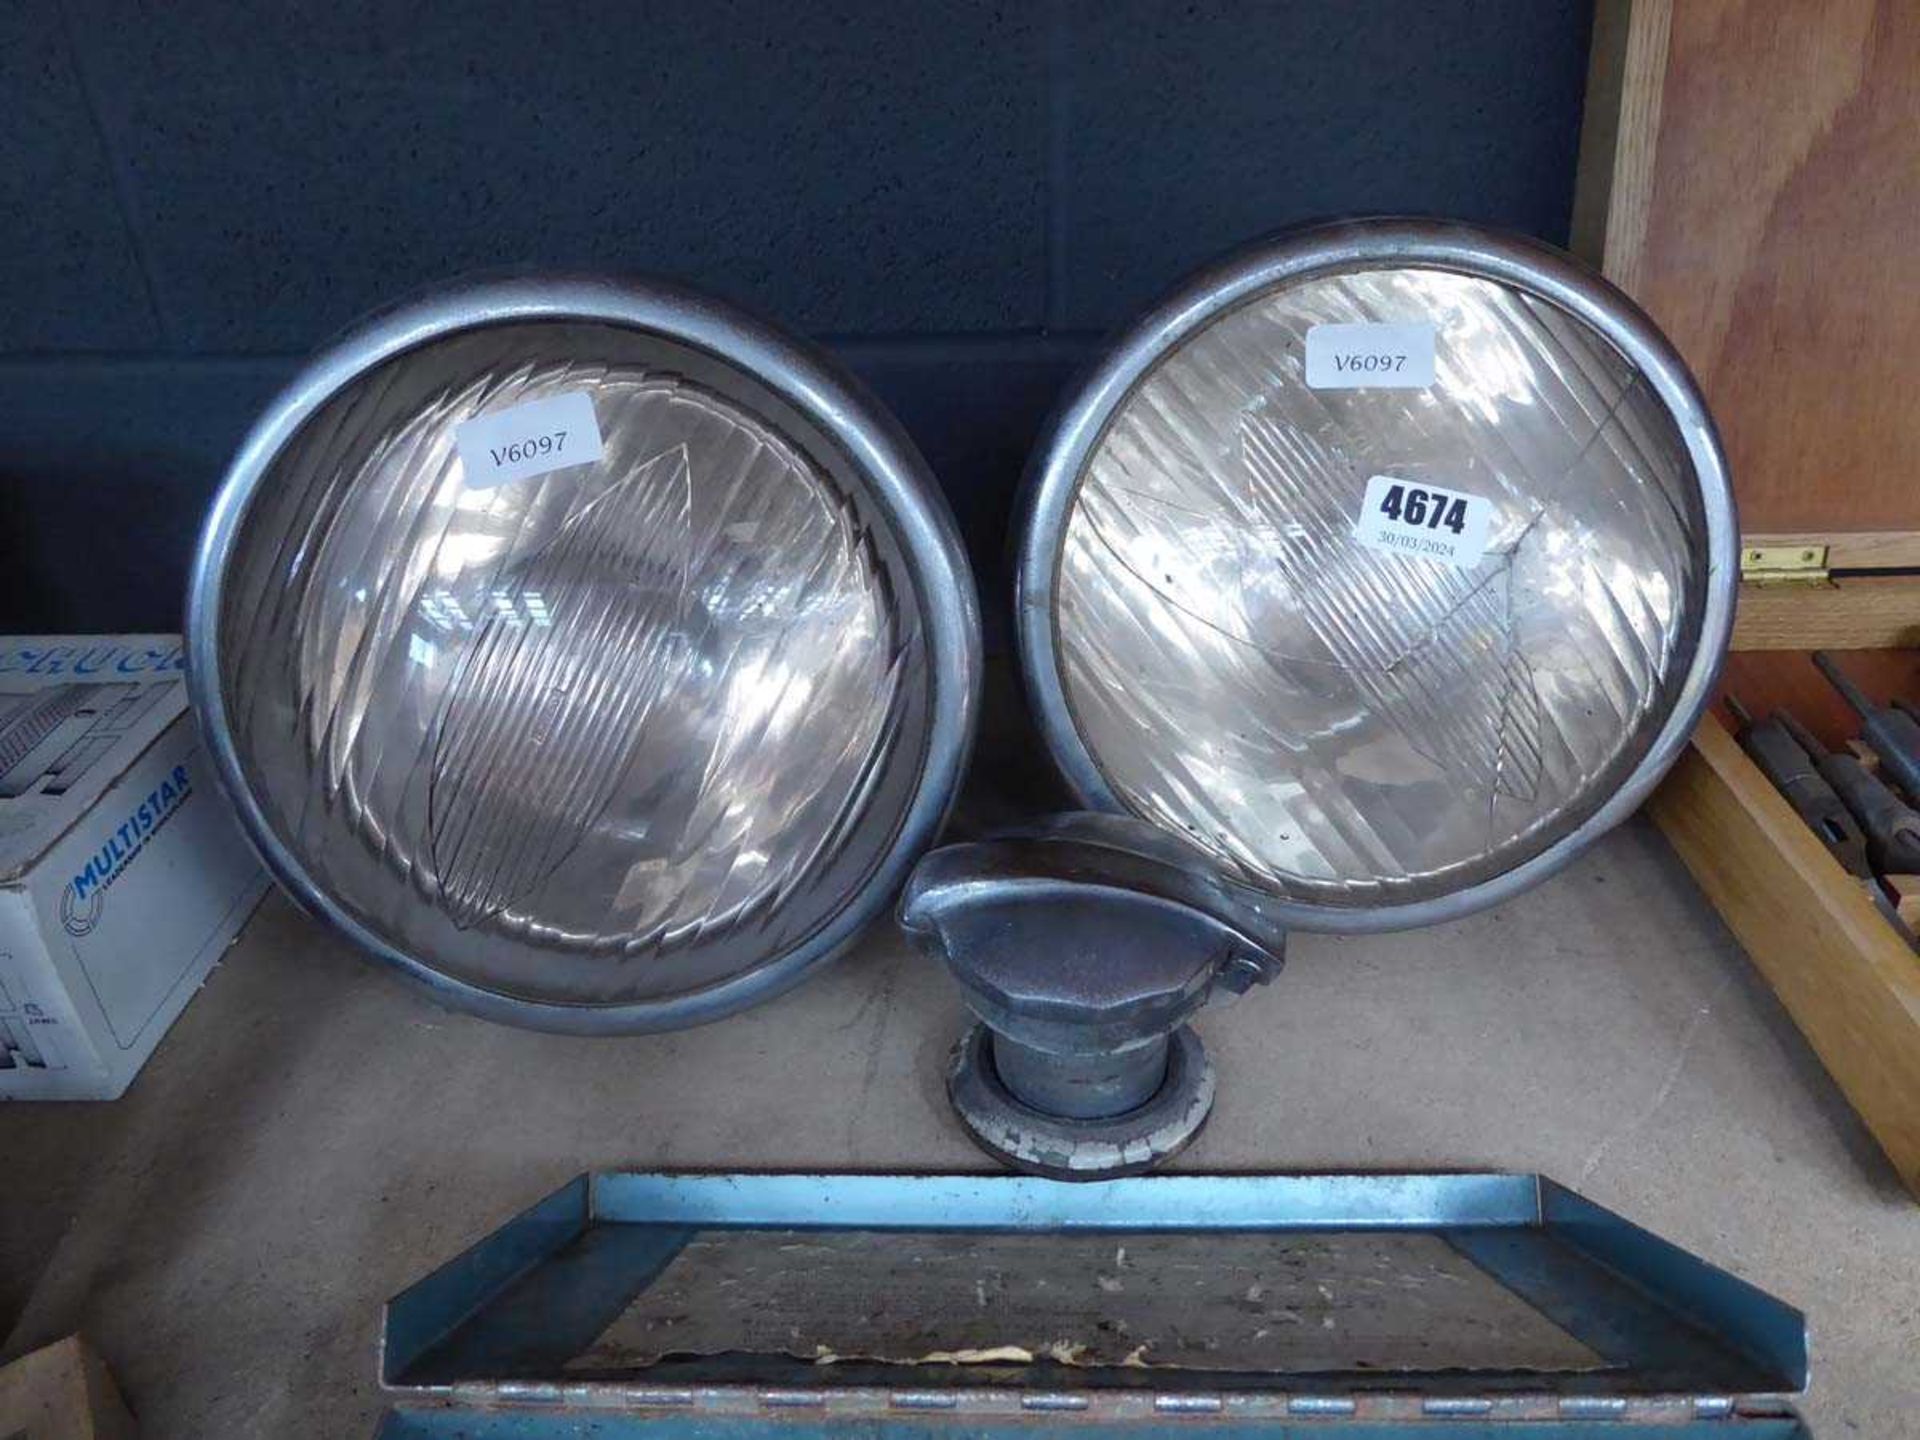 2 vintage car head lights and a fuel cap